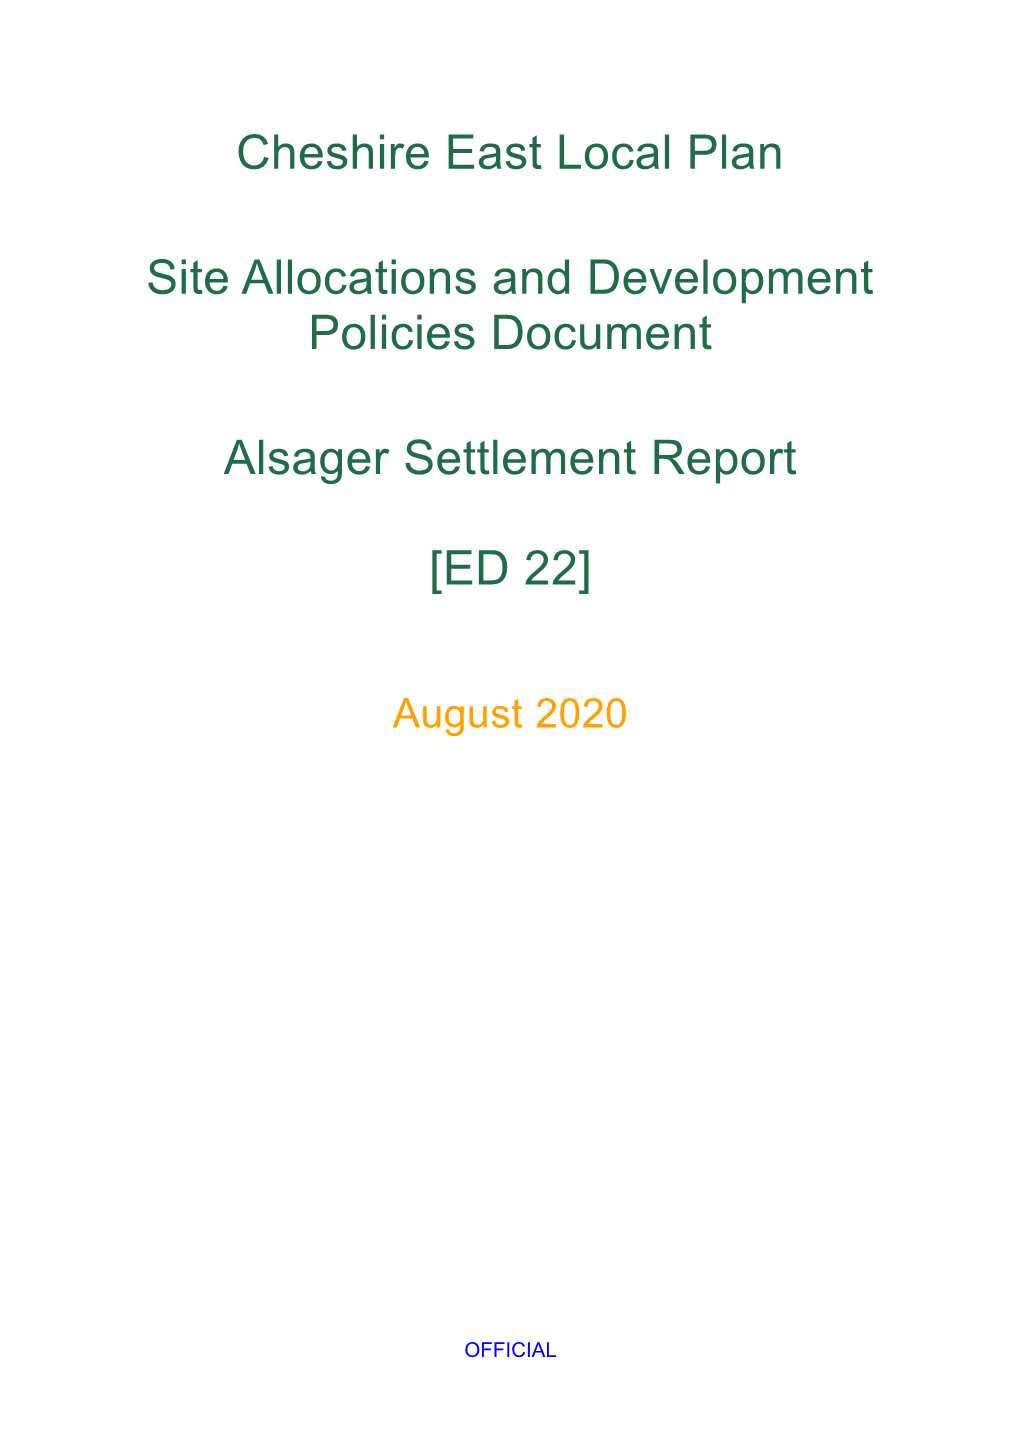 Alsager Settlement Report